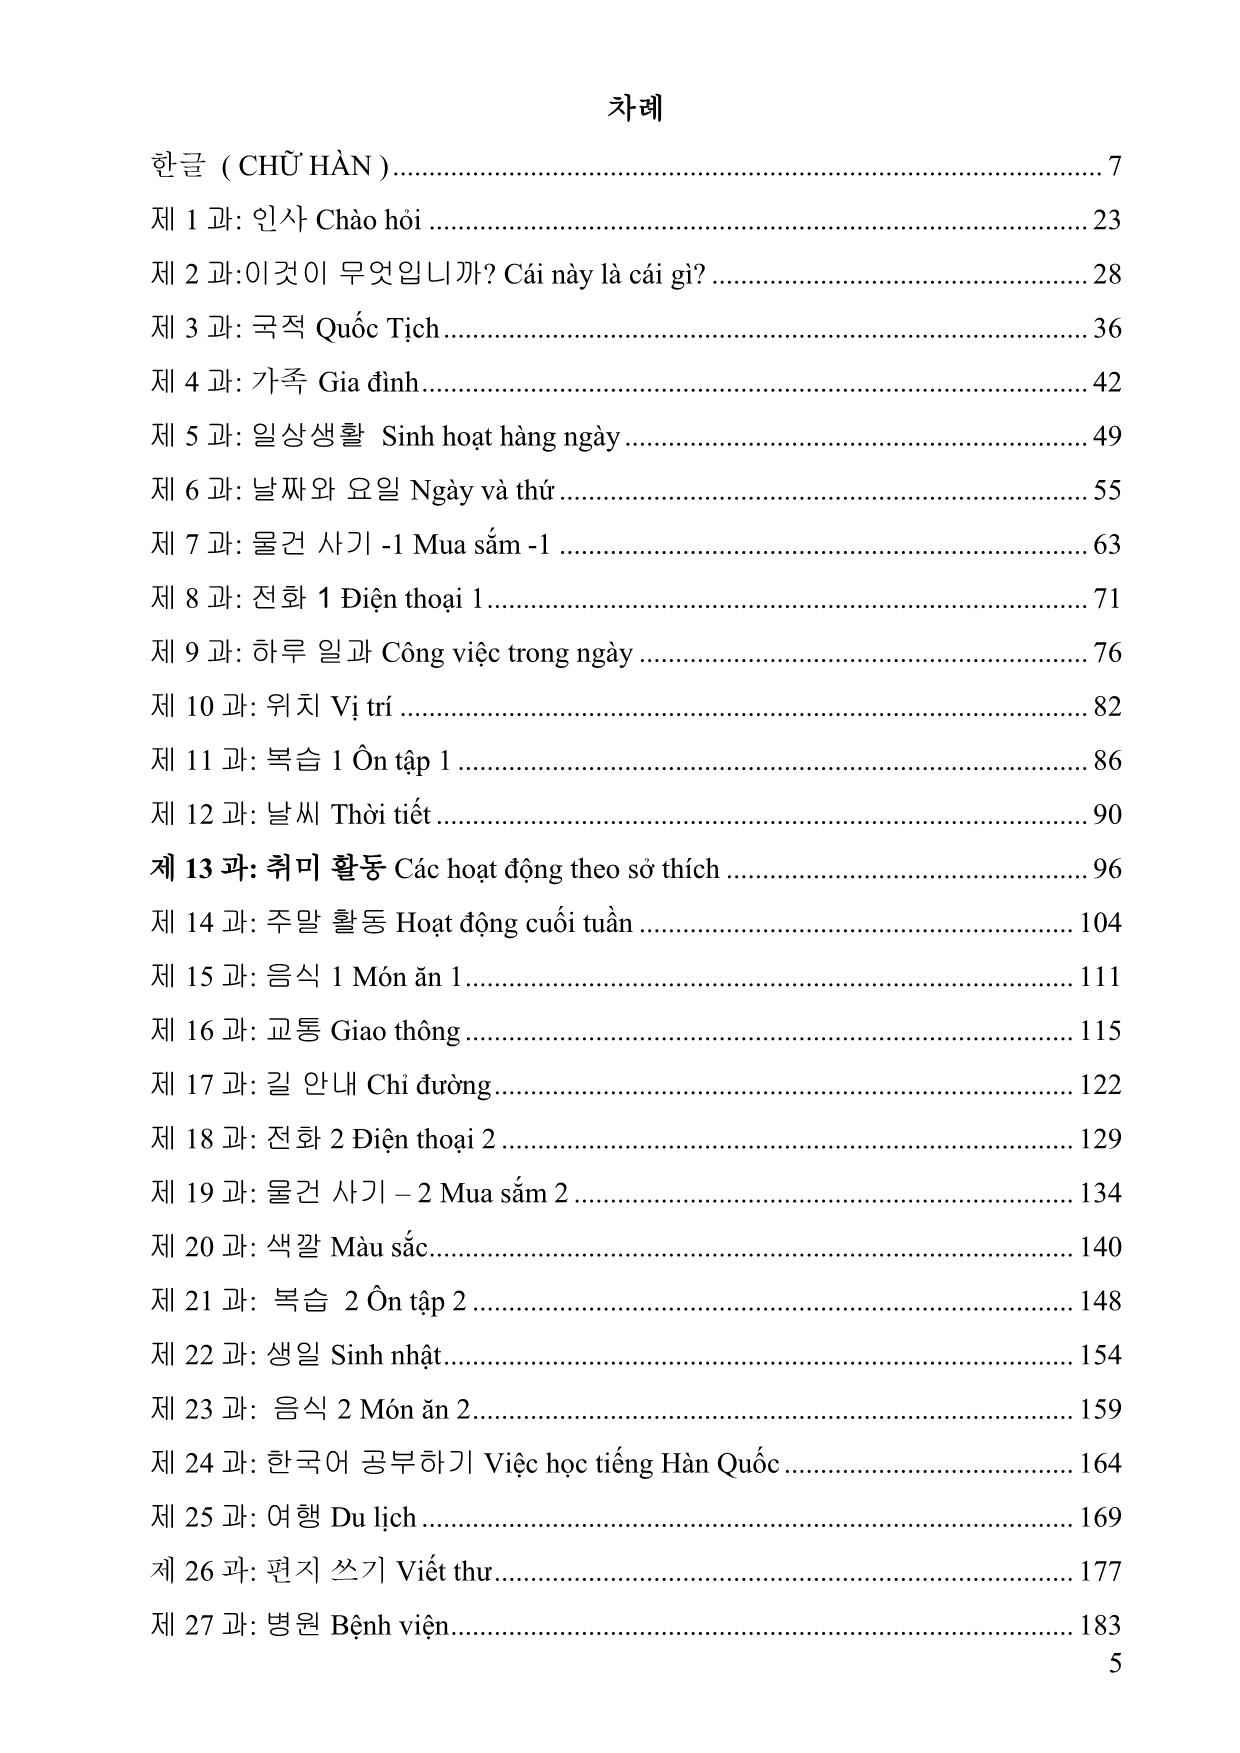 Giáo trình Chương trình tiếng Hàn cơ bản trang 5